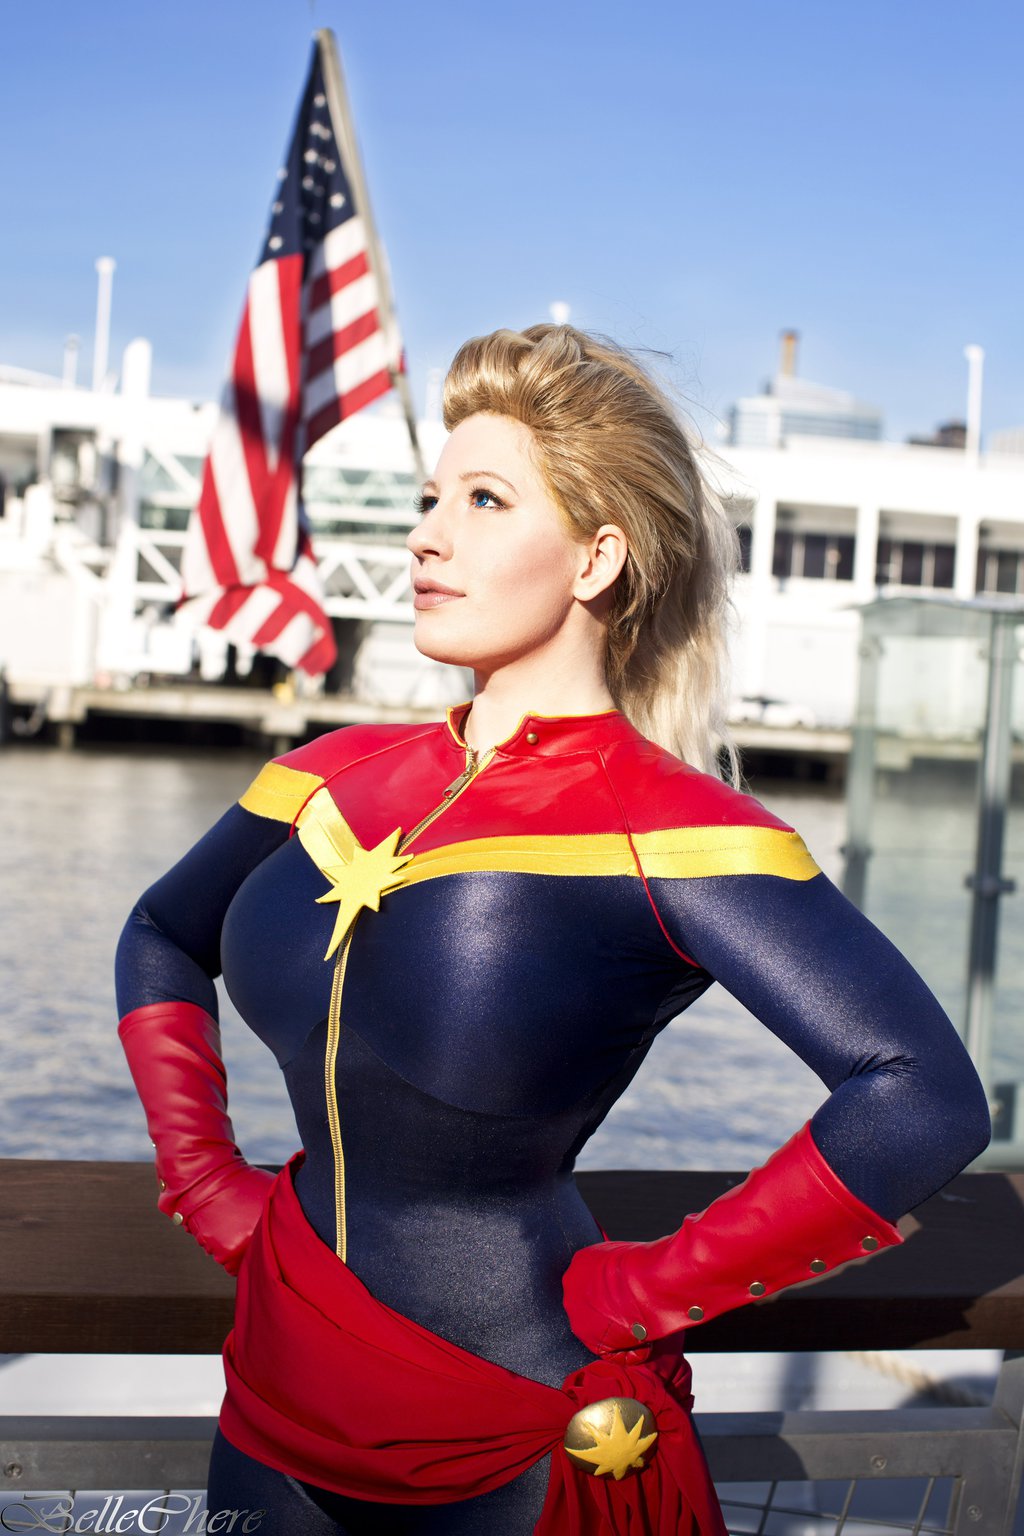   Belle Chere  is Captain Marvel 